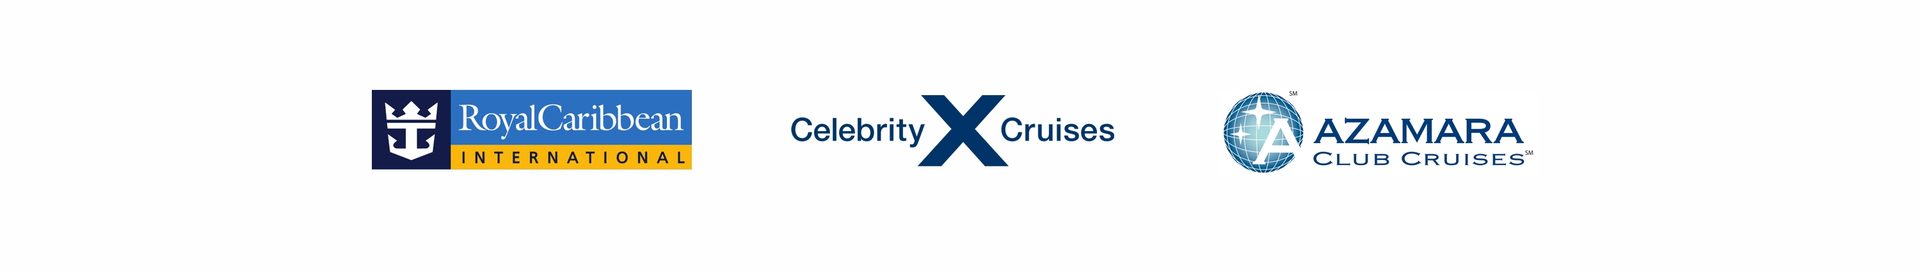 Royal Caribbean Cruises Ltd. ustanovila novou strukturu preferovaných obchodních zástupců v ČR